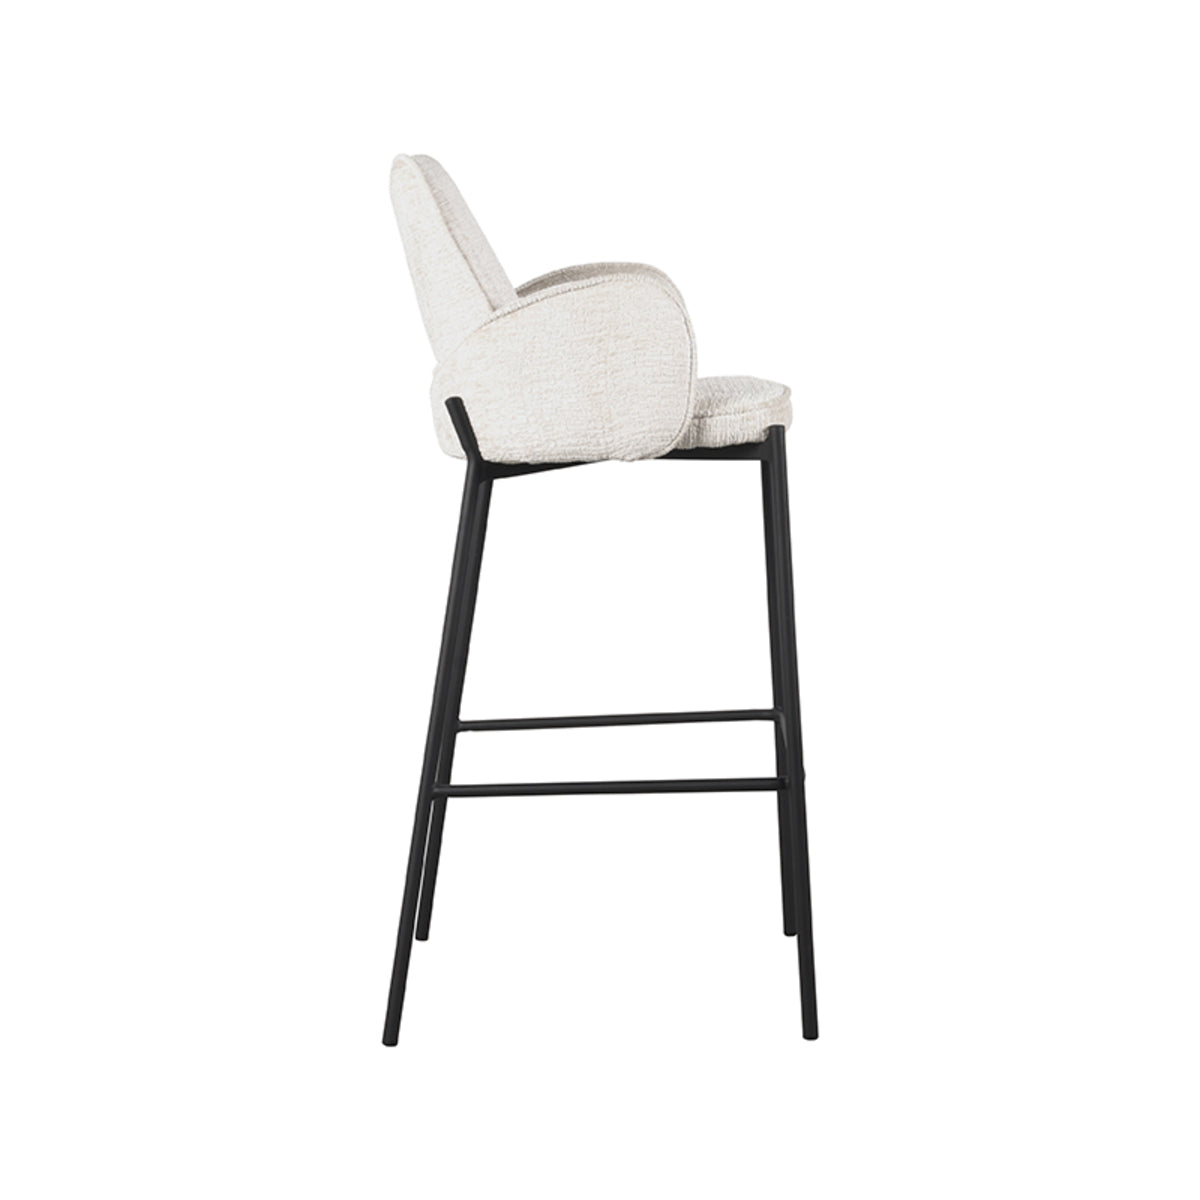 LABEL51 Bar stool Joni - Cream - Velvet - Seat height 78 cm |